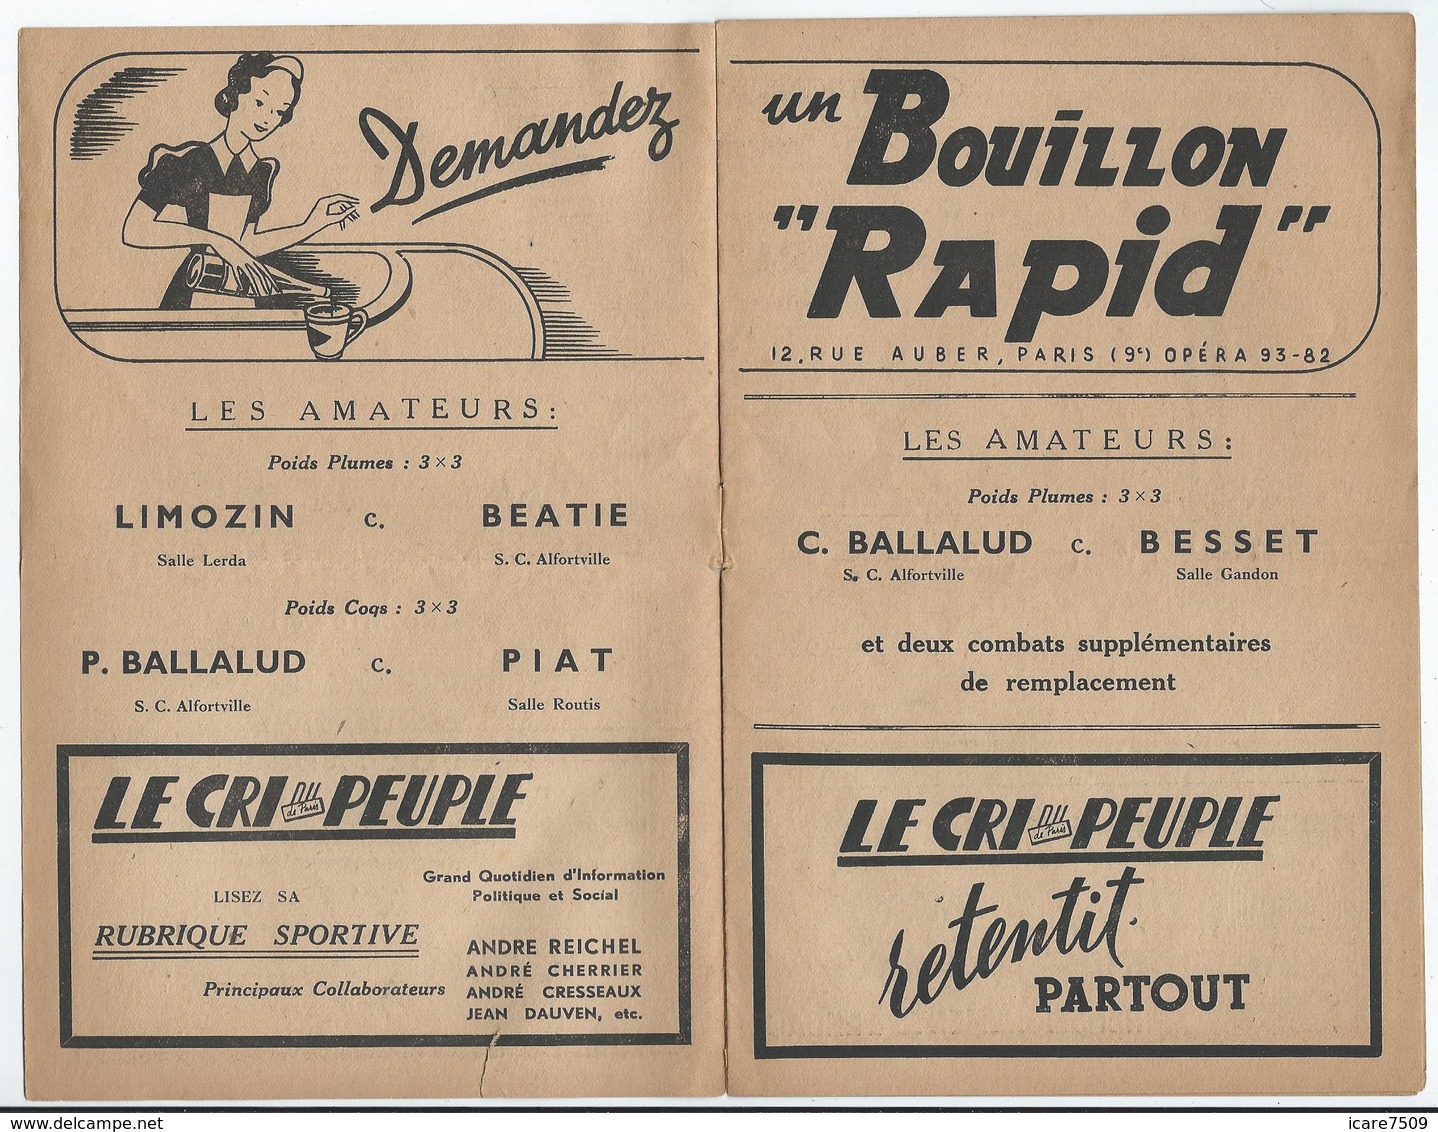 PARIS - Arènes Du Grand-Palais - Gala De Boxe Du 5 Janvier 1944 - 8 Pages - Pub De Propagande Vichyste (Légion Des Volon - Programs